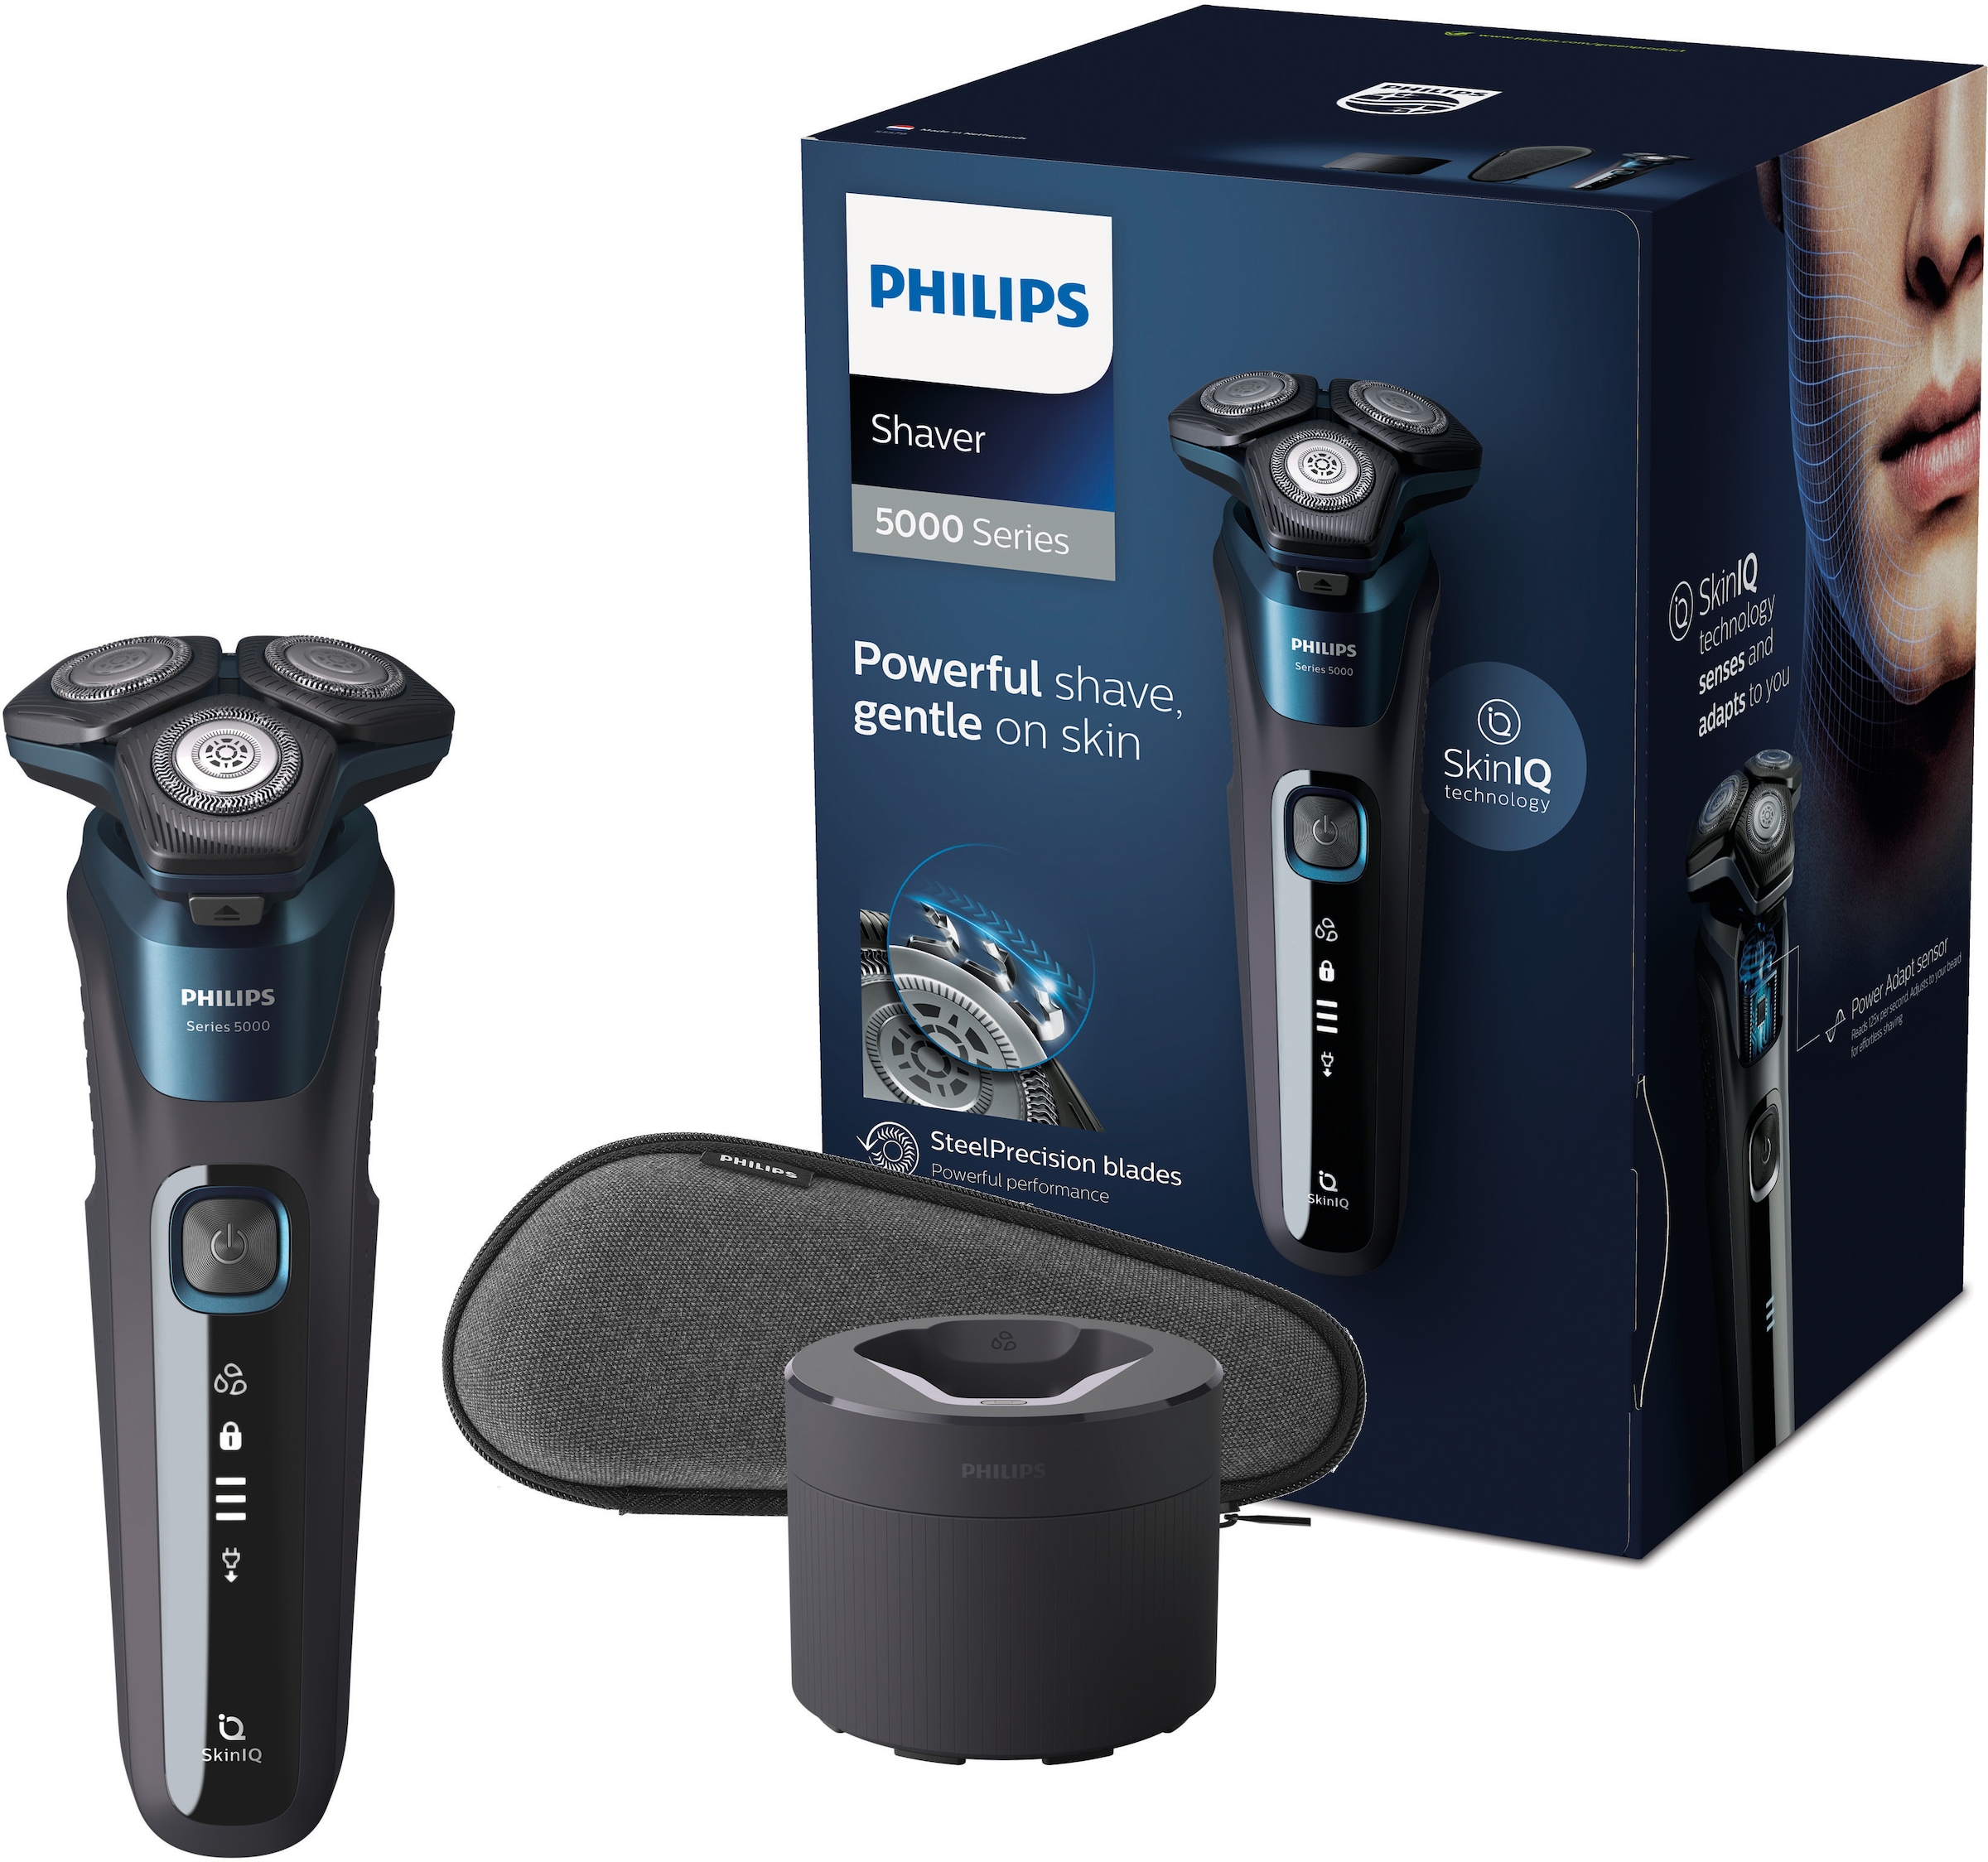 Philips Elektrorasierer »Series kaufen bei OTTO SkinIQ mit ausklappbarer 5000 Reinigungsstation, Technologie S5579/50«, Langhaarschneider